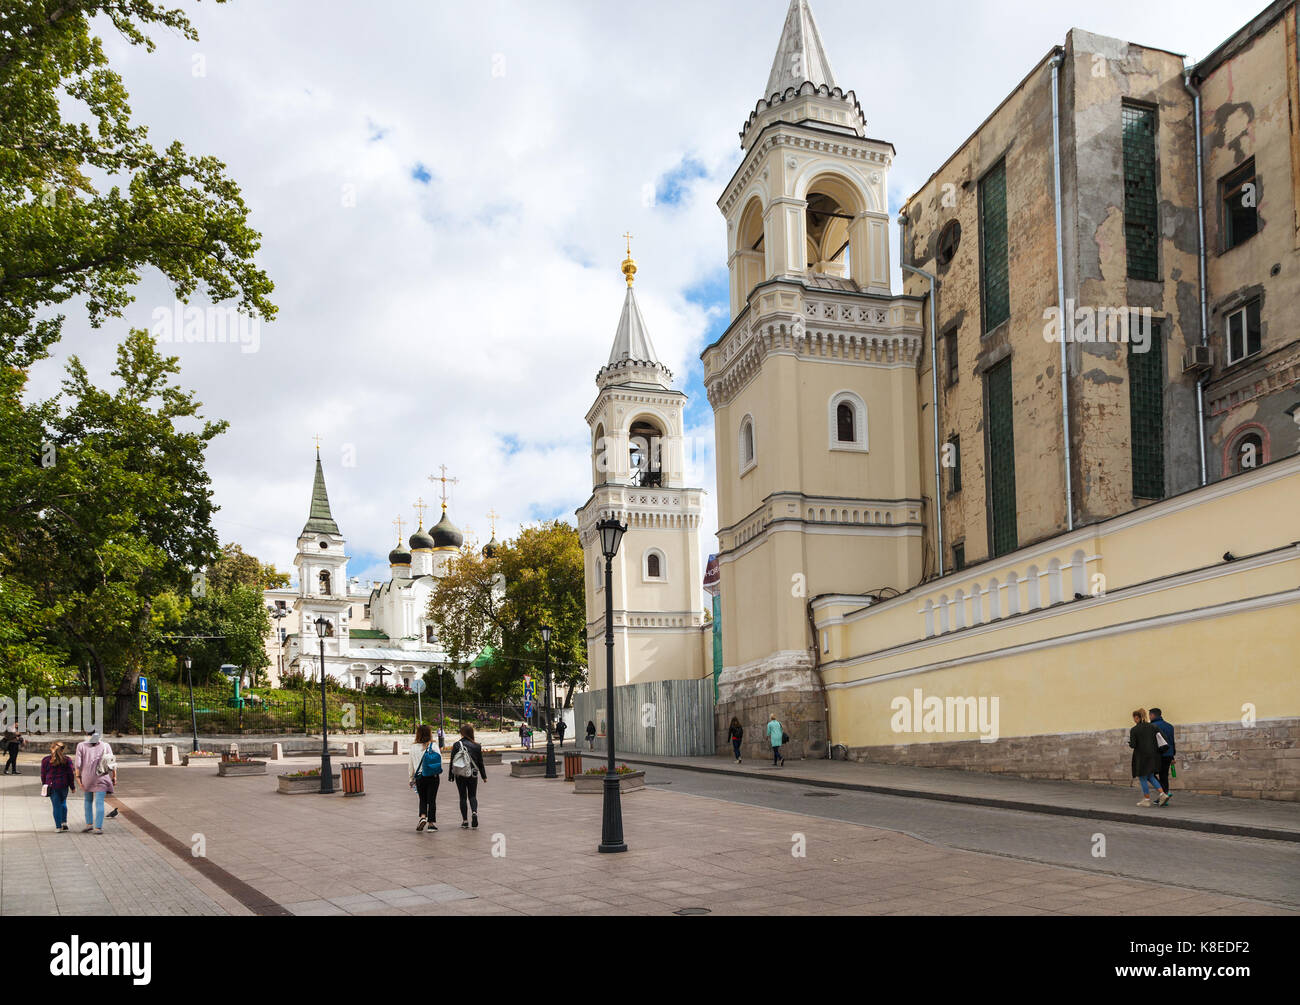 Moscou, Russie - le 16 septembre 2017 : les gens sur la rue zabelina près de mur d'ivanovsky (St Jean Baptiste) couvent et vue de l'église de St Vladimir Banque D'Images